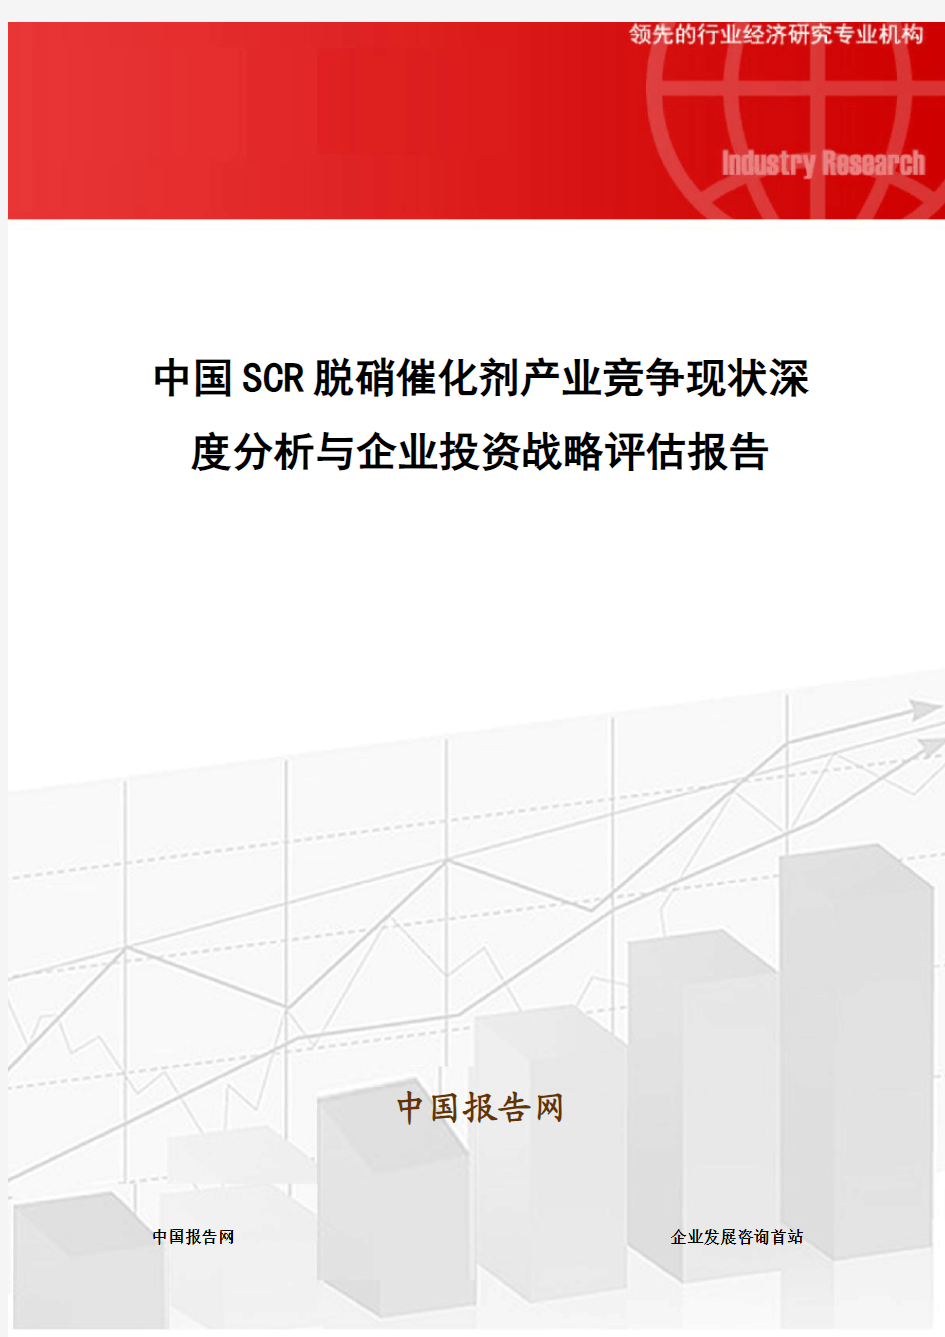 中国SCR脱硝催化剂产业竞争现状深度分析与企业投资战略评估报告